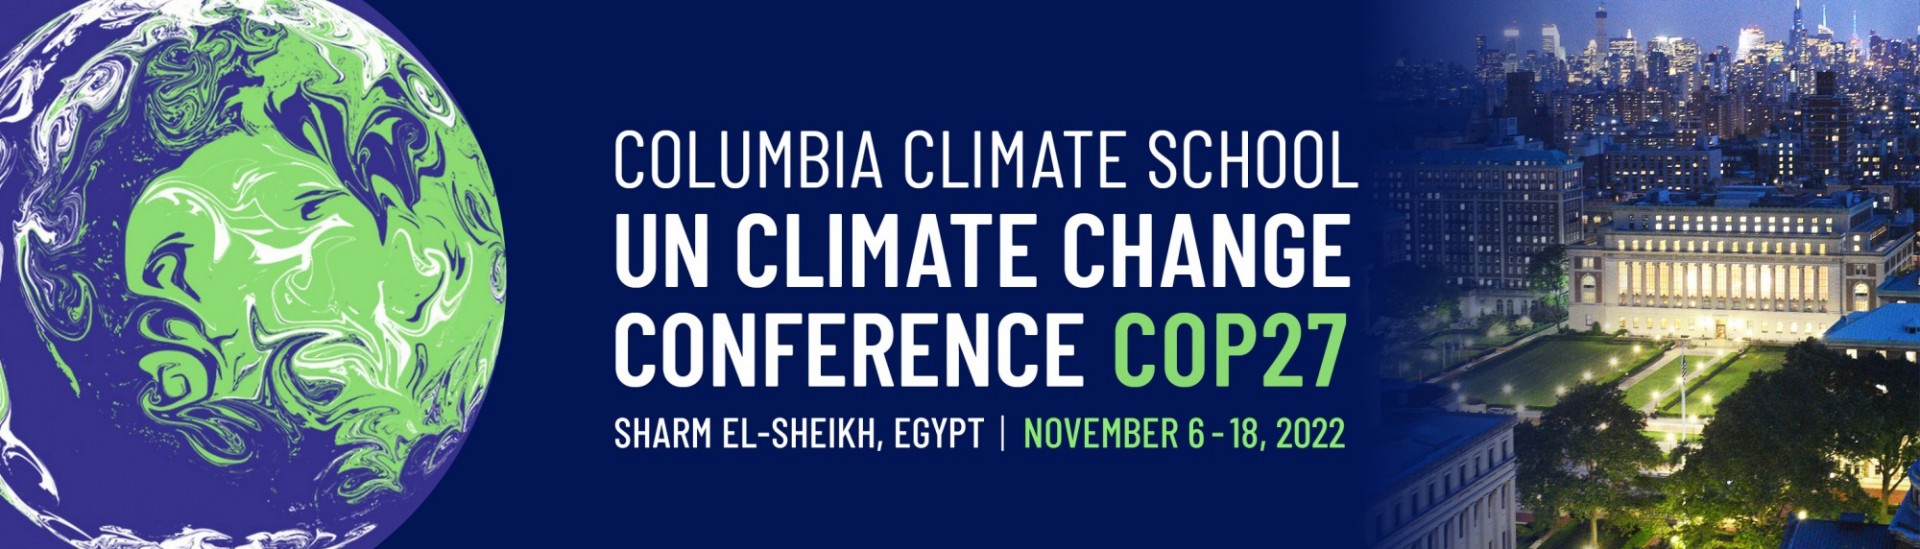 UN Climate Change Conference - COP27